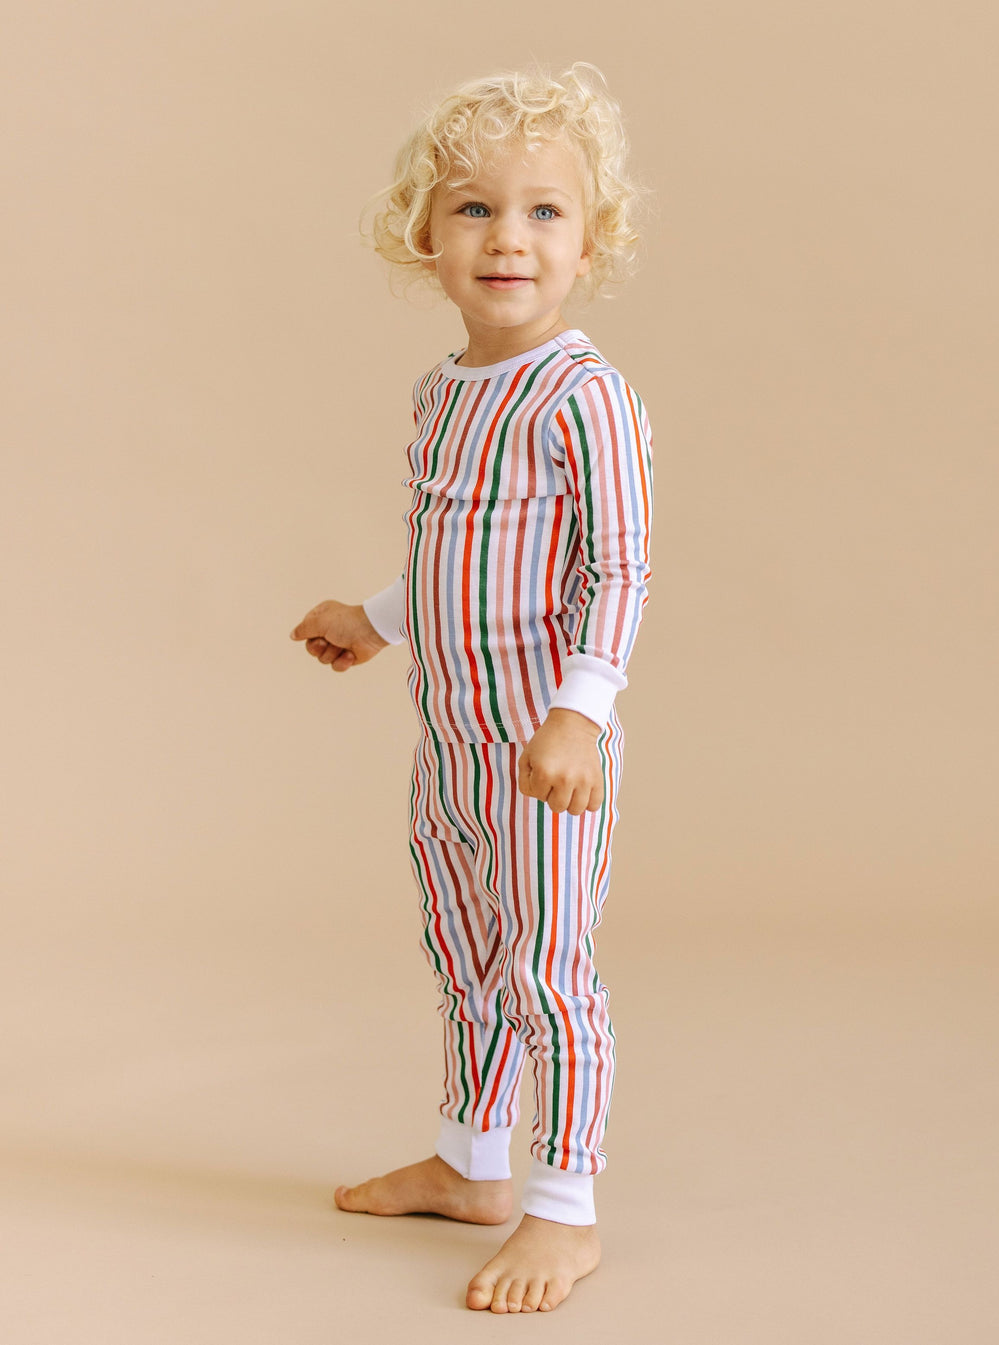 Kids' Rattle And Organic Cotton Pajama Box Set - Baby & Kids